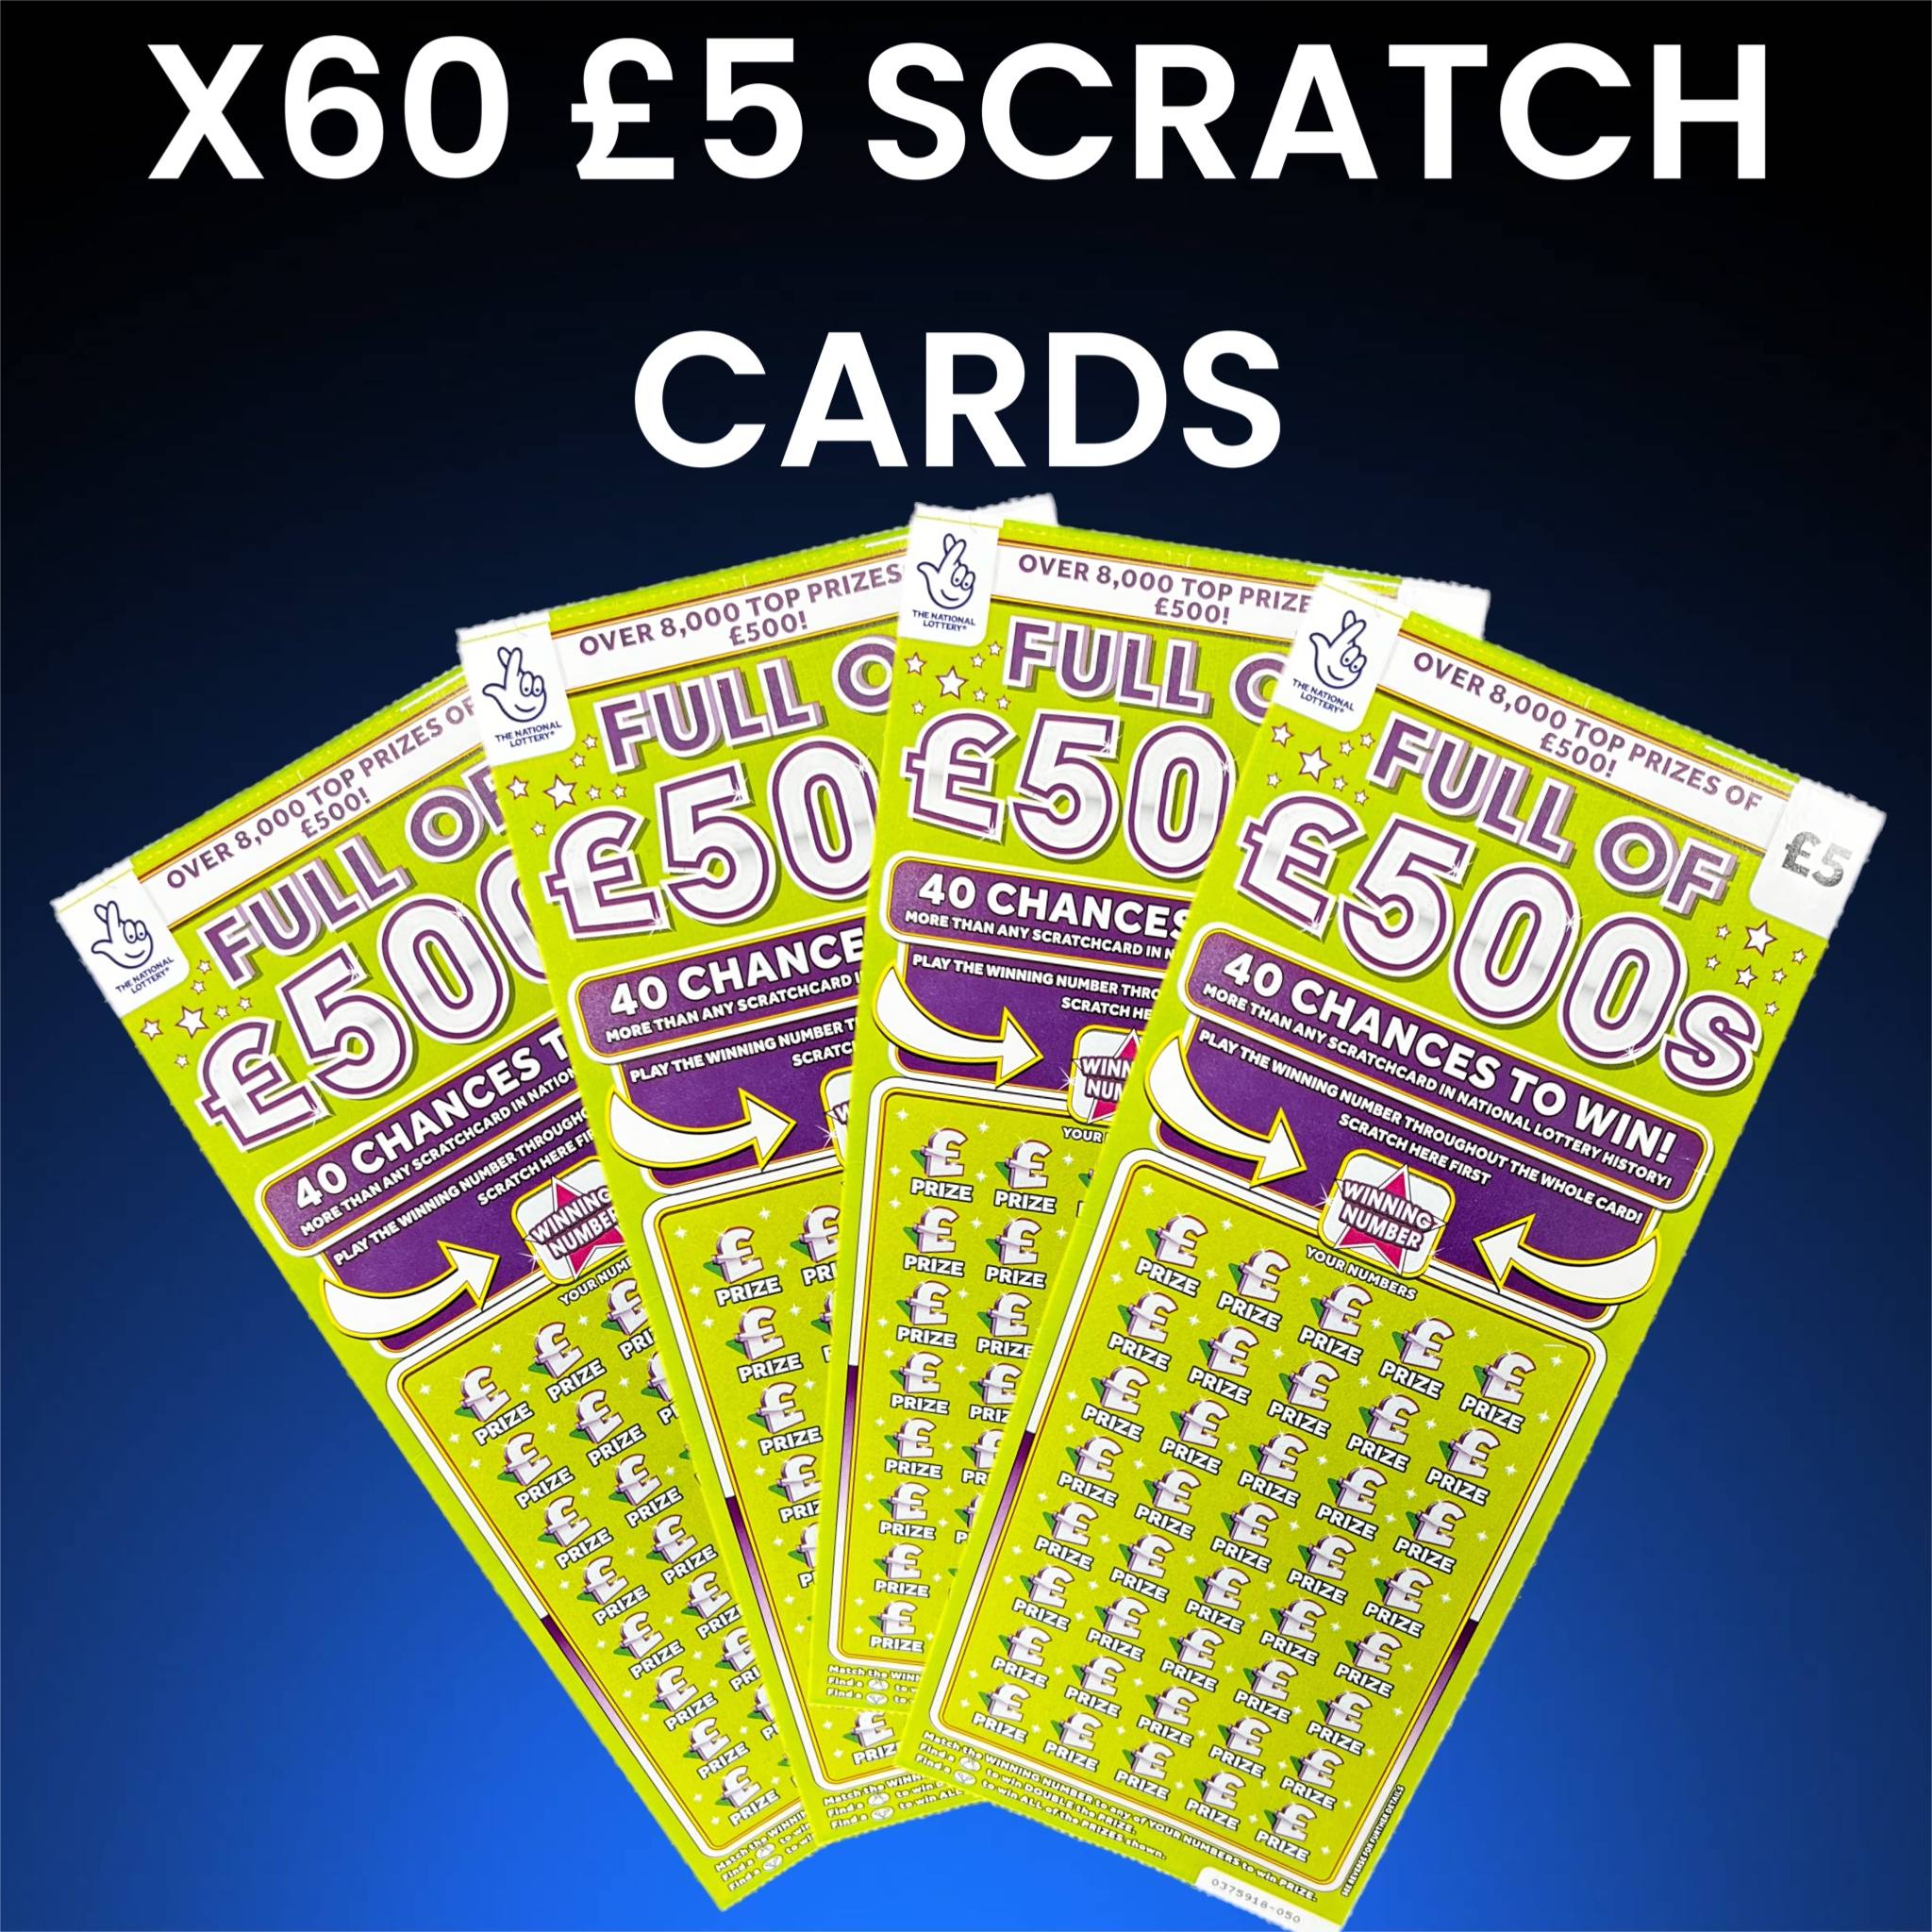 X60 £5 Scratch cards